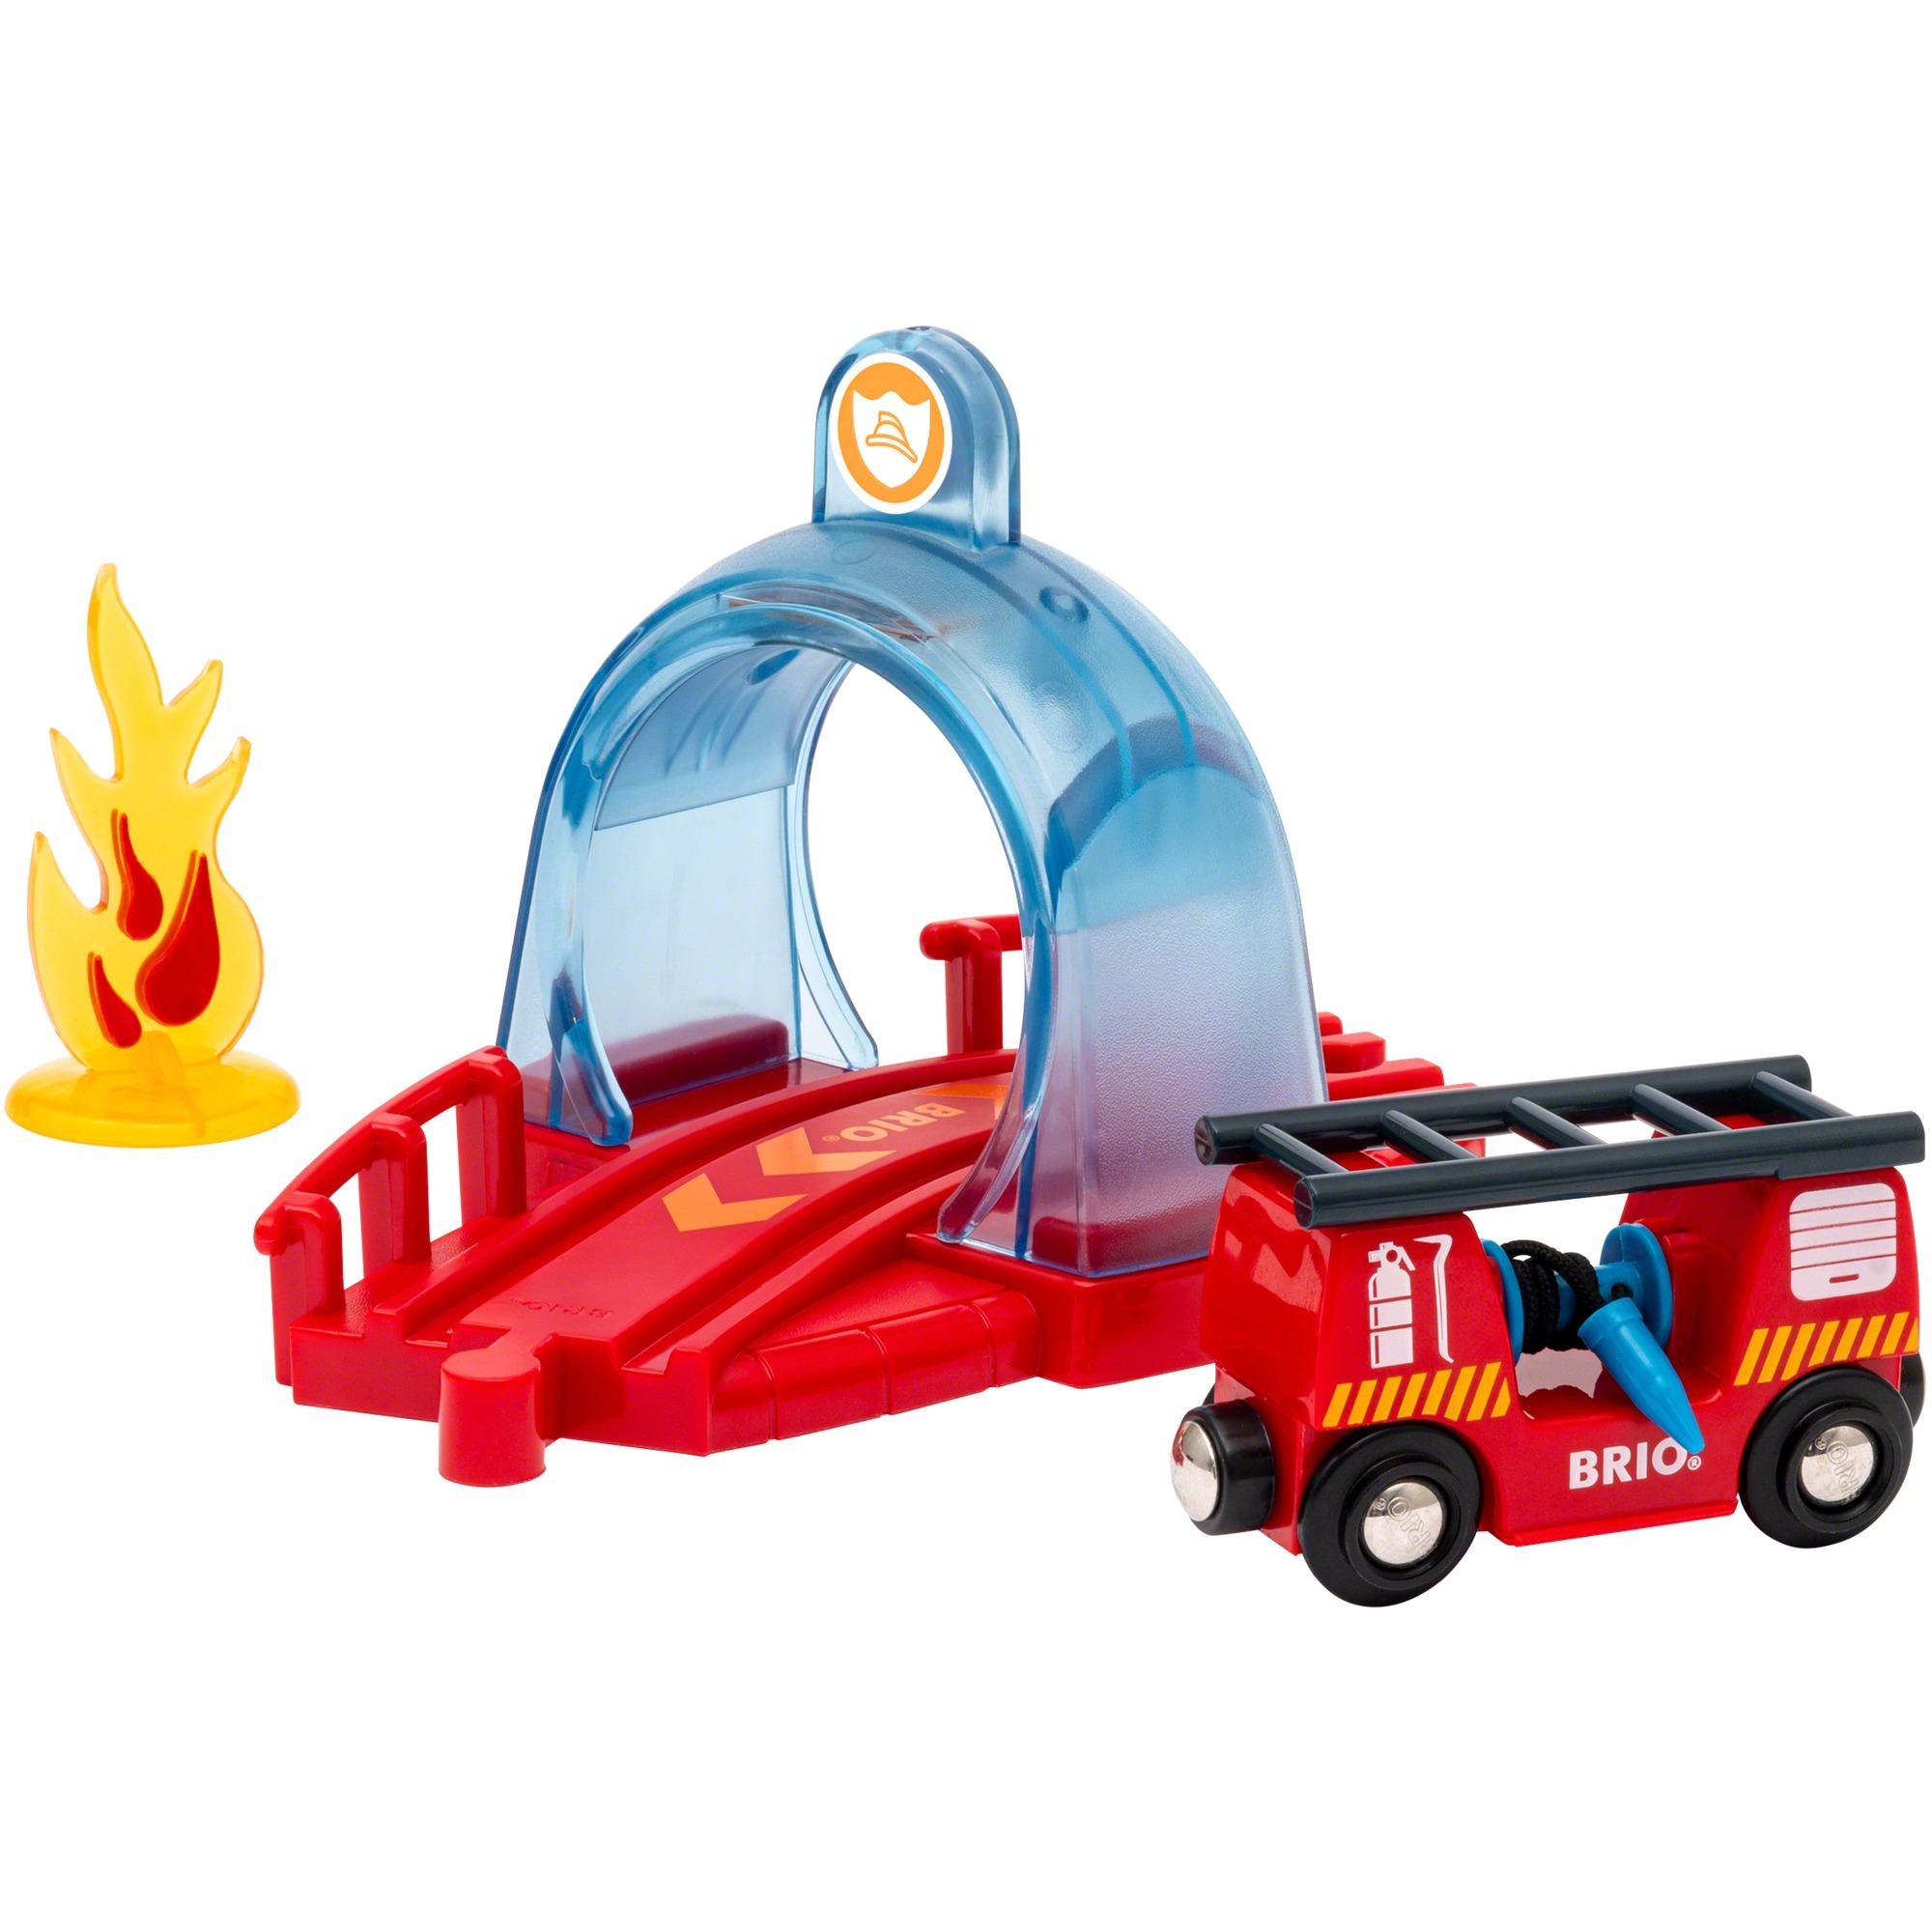 Image of Alternate - Smart Tech Sound Feuerwehreinsatz, Spielfahrzeug online einkaufen bei Alternate